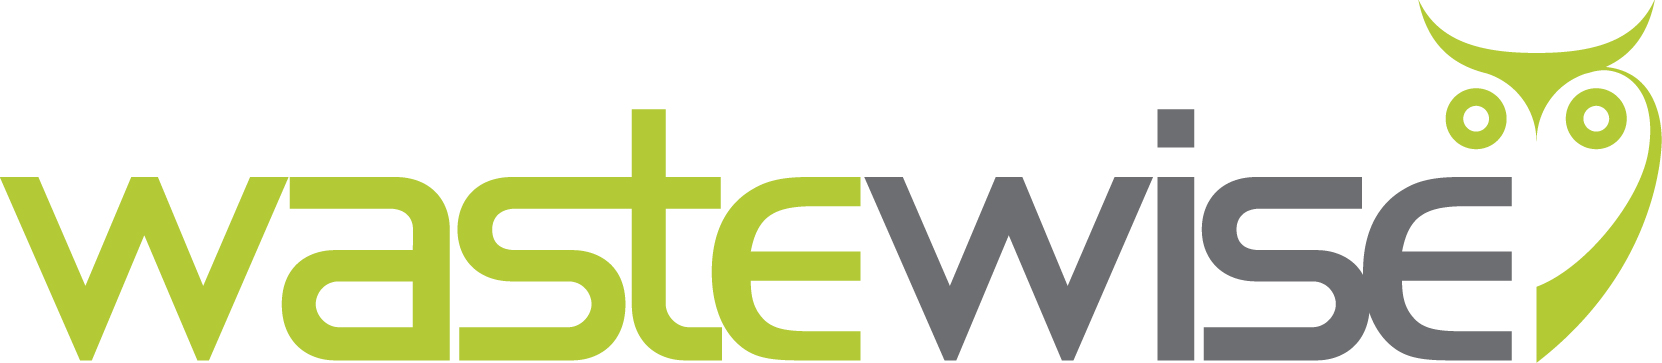 Organisation Logo - Biowise Ltd